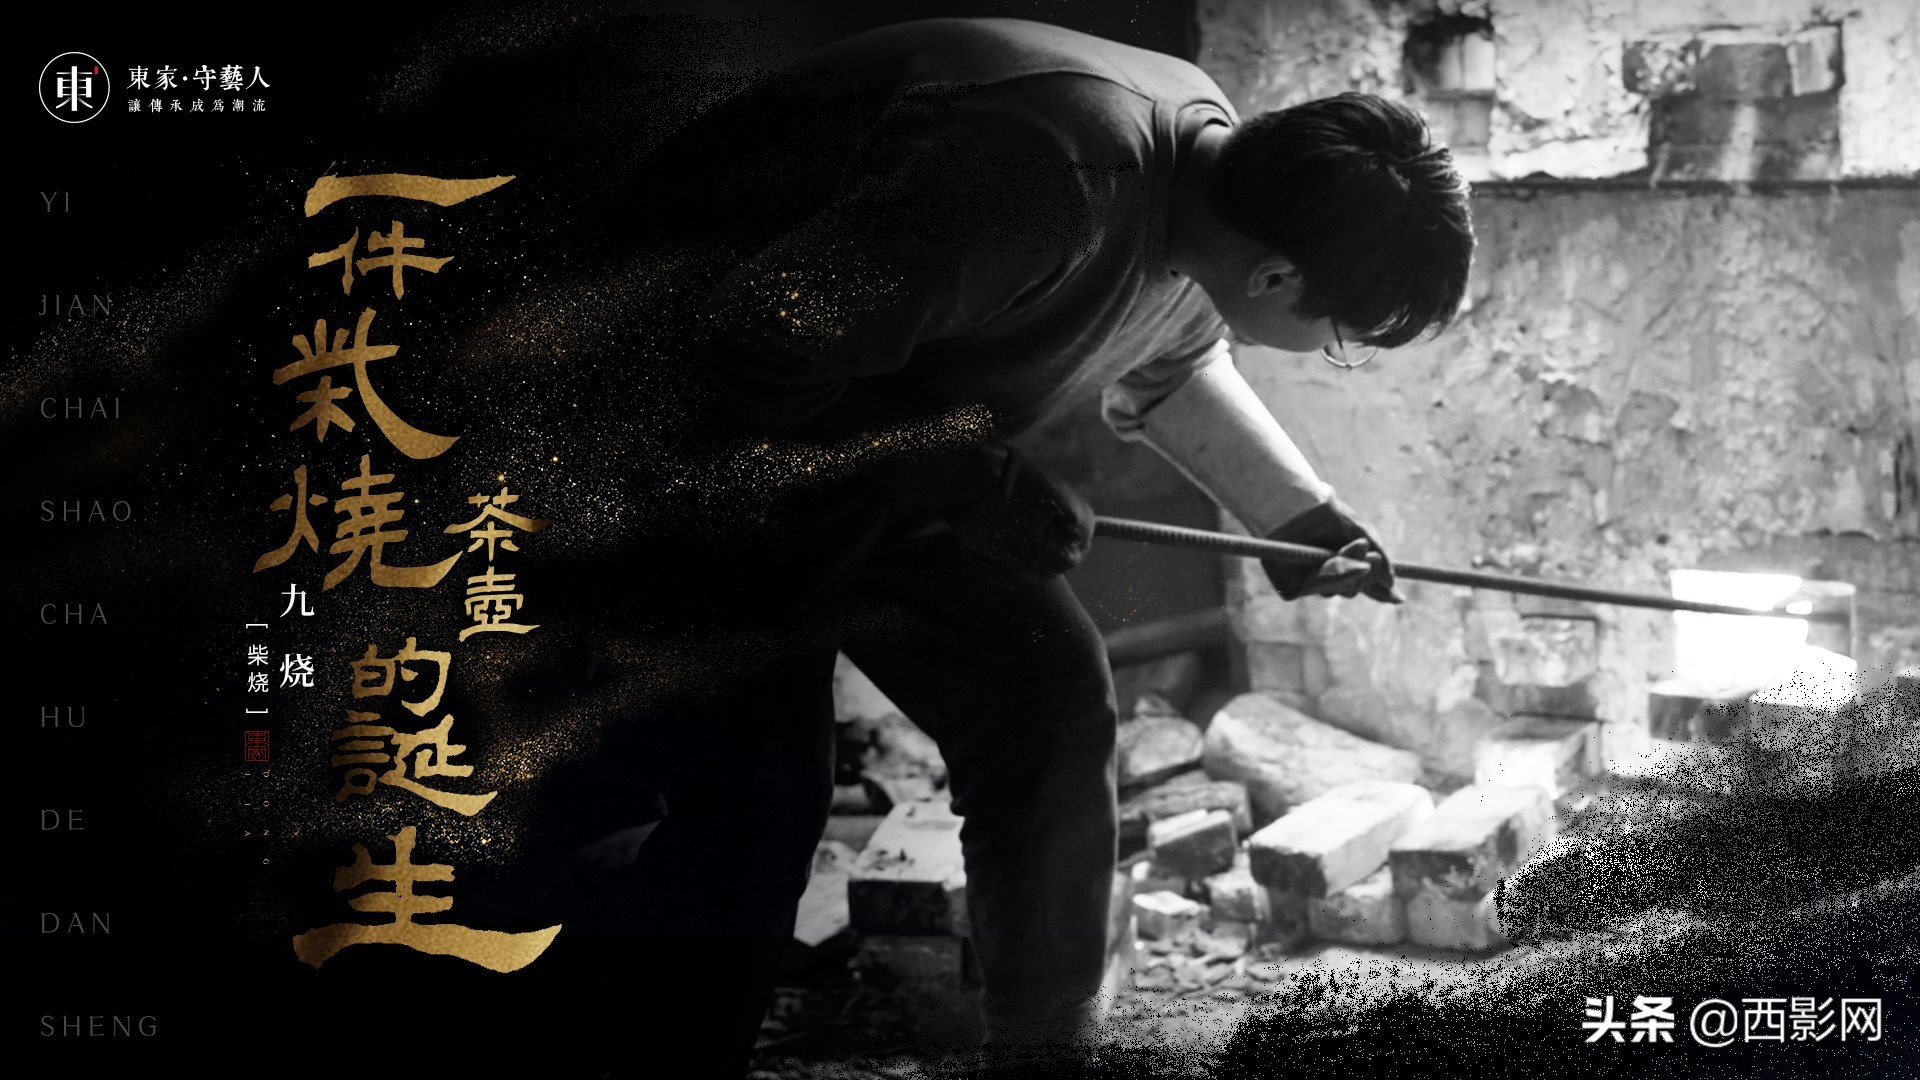 大型纪录片《守艺中国》之景德镇篇将于6月12日全网首播